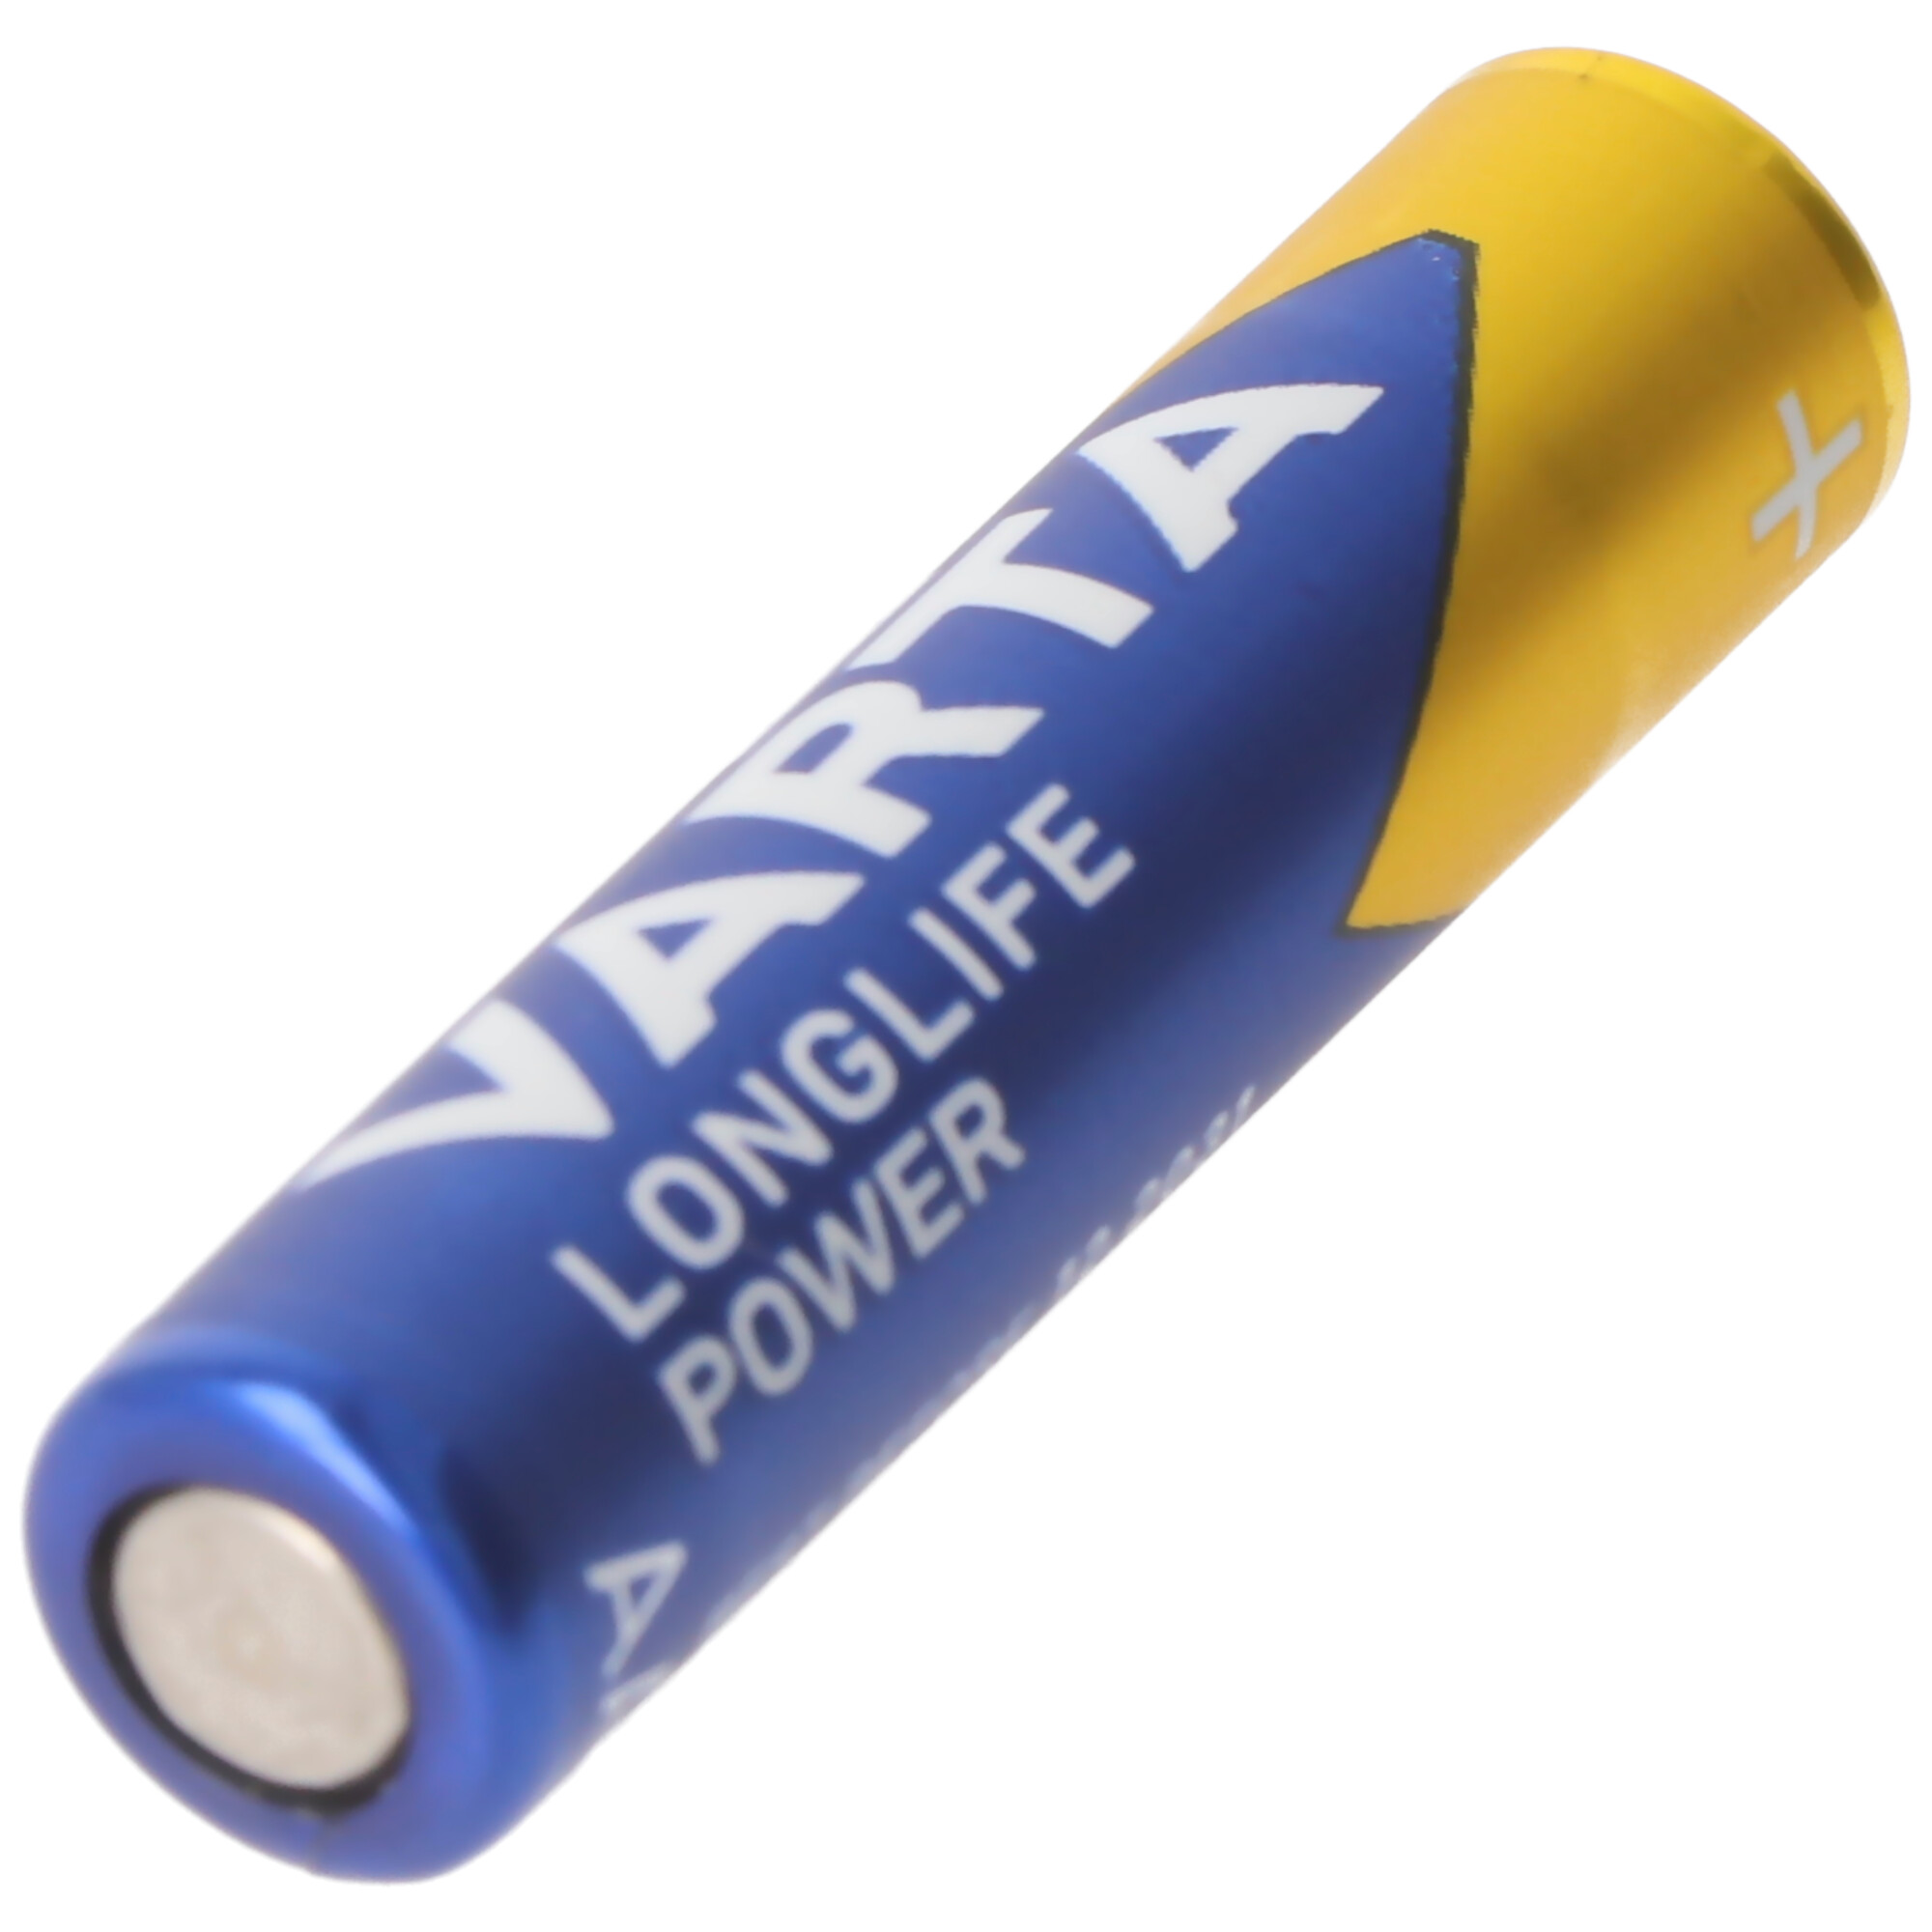 Varta Longlife Power (ehem. High Energy) Micro AAA 4903 Batterien 4er-Blisterkarte, Abmessungen 44,5x10,5mm